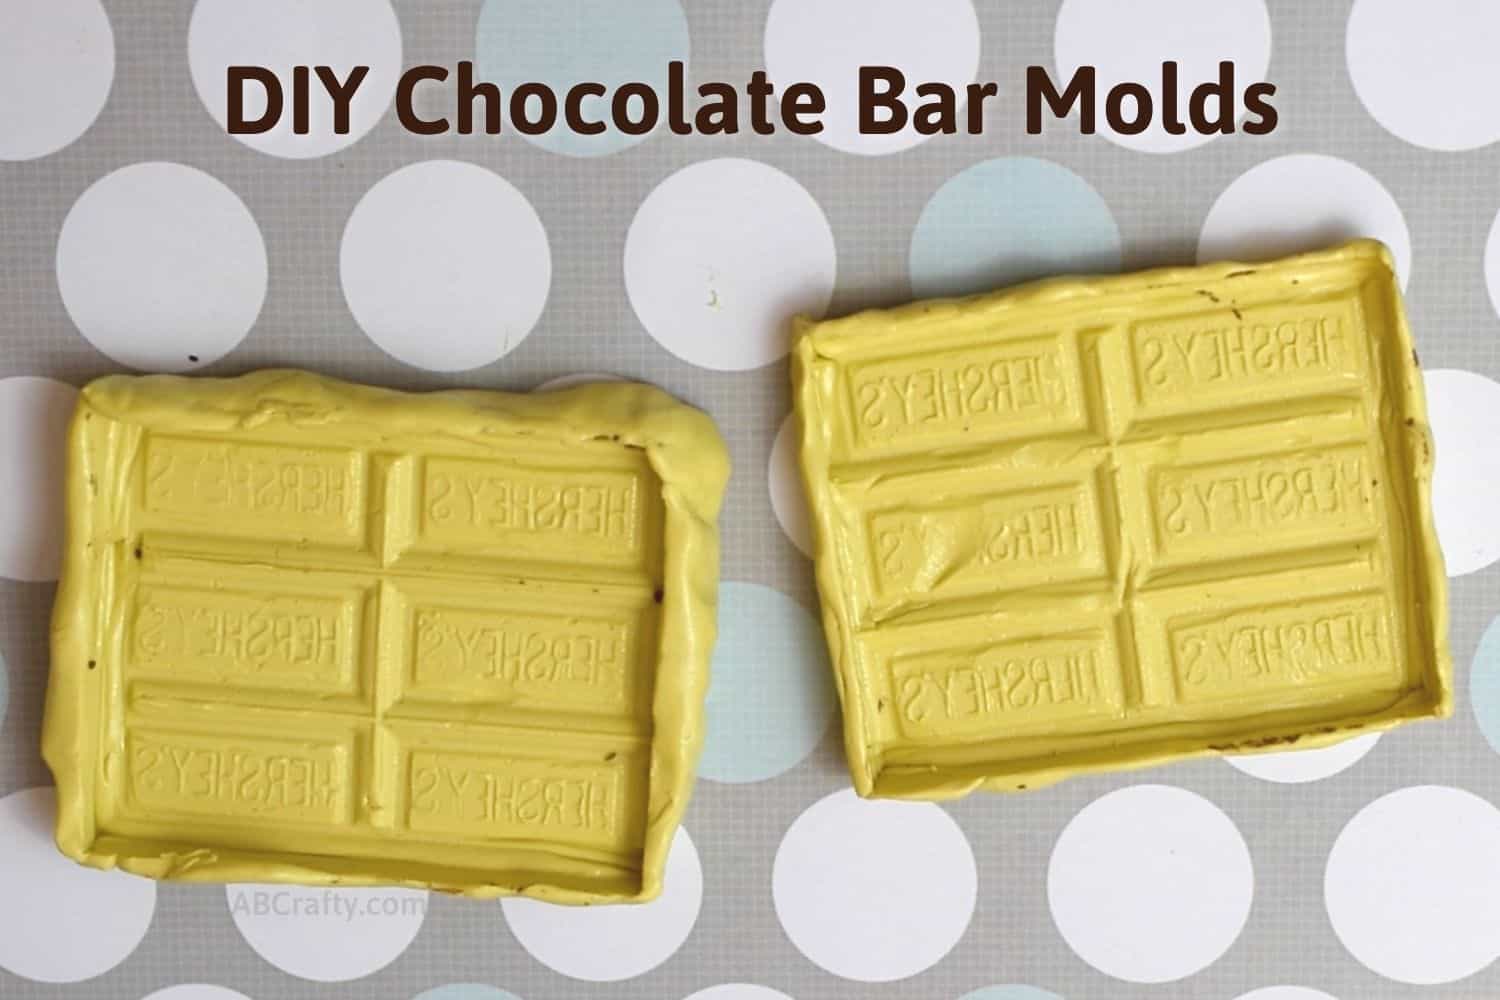 https://www.abcrafty.com/wp-content/uploads/2021/04/chocolate-bar-mold-featured.jpg